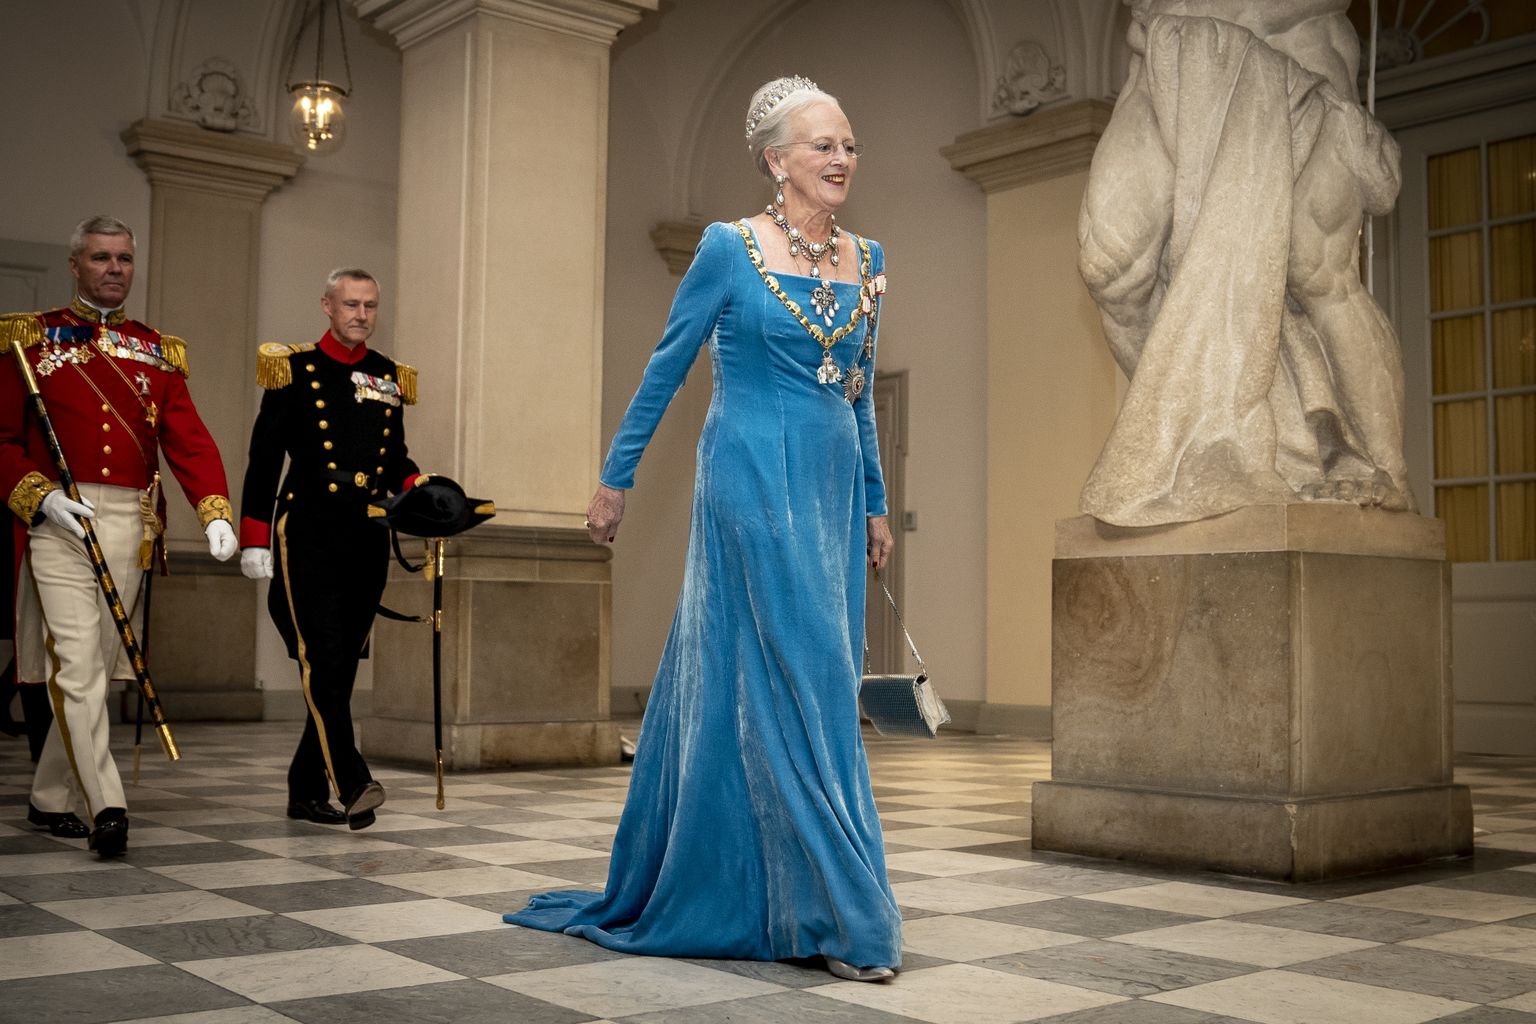 Taani kuninganna Margrethe II suundumas 11. septembril 2022 Kopenhaagenis Christiansborgi palees oma 50. valitsemisaasta troonijuubeli galale